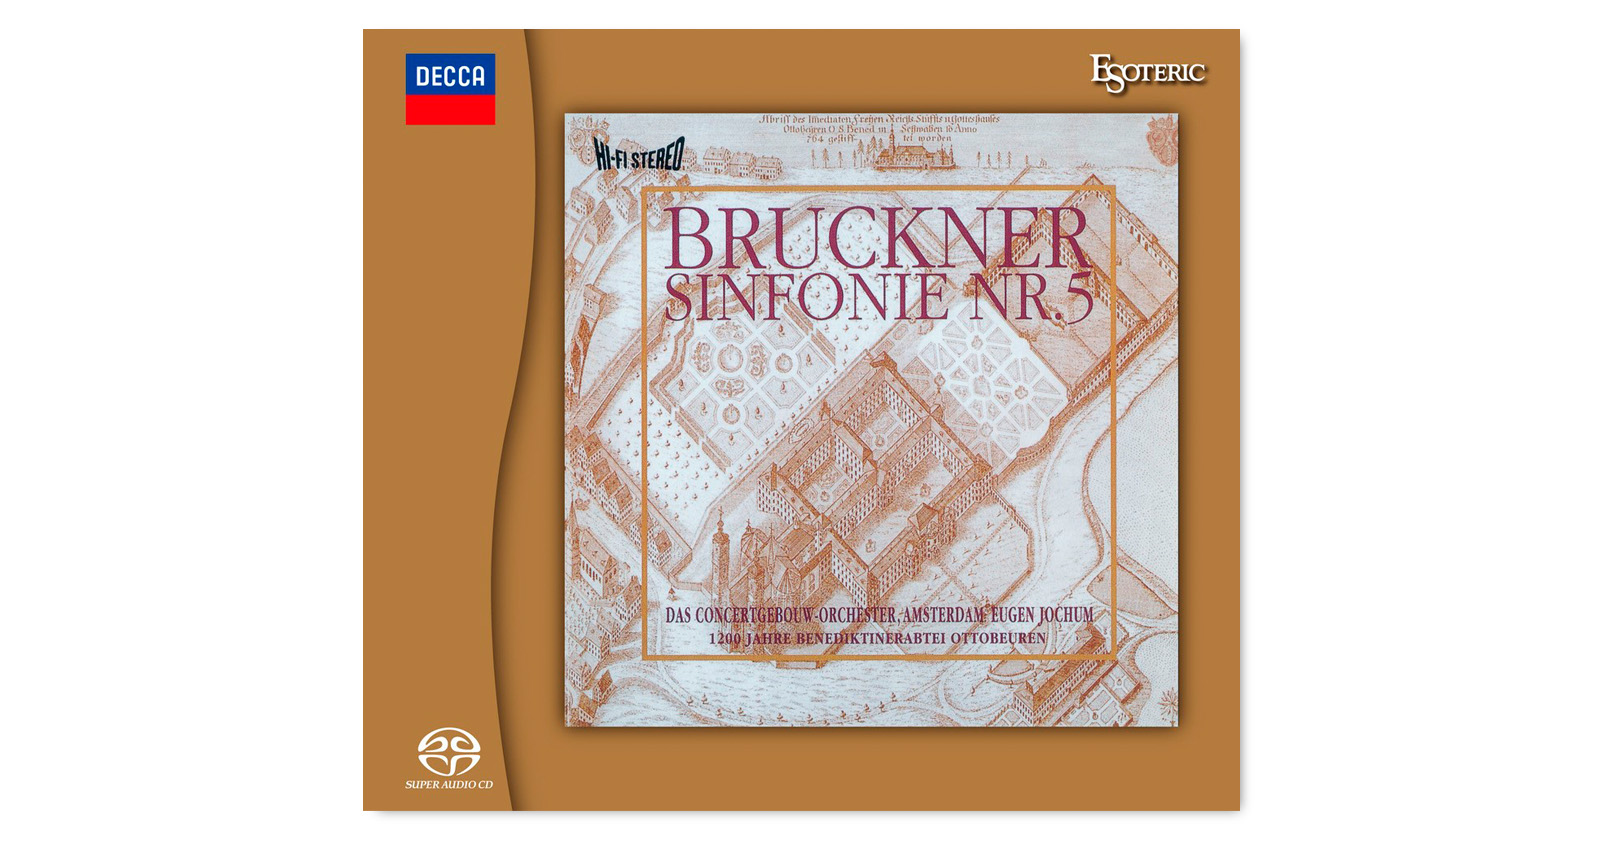 BRUCKNER Symphony No.5